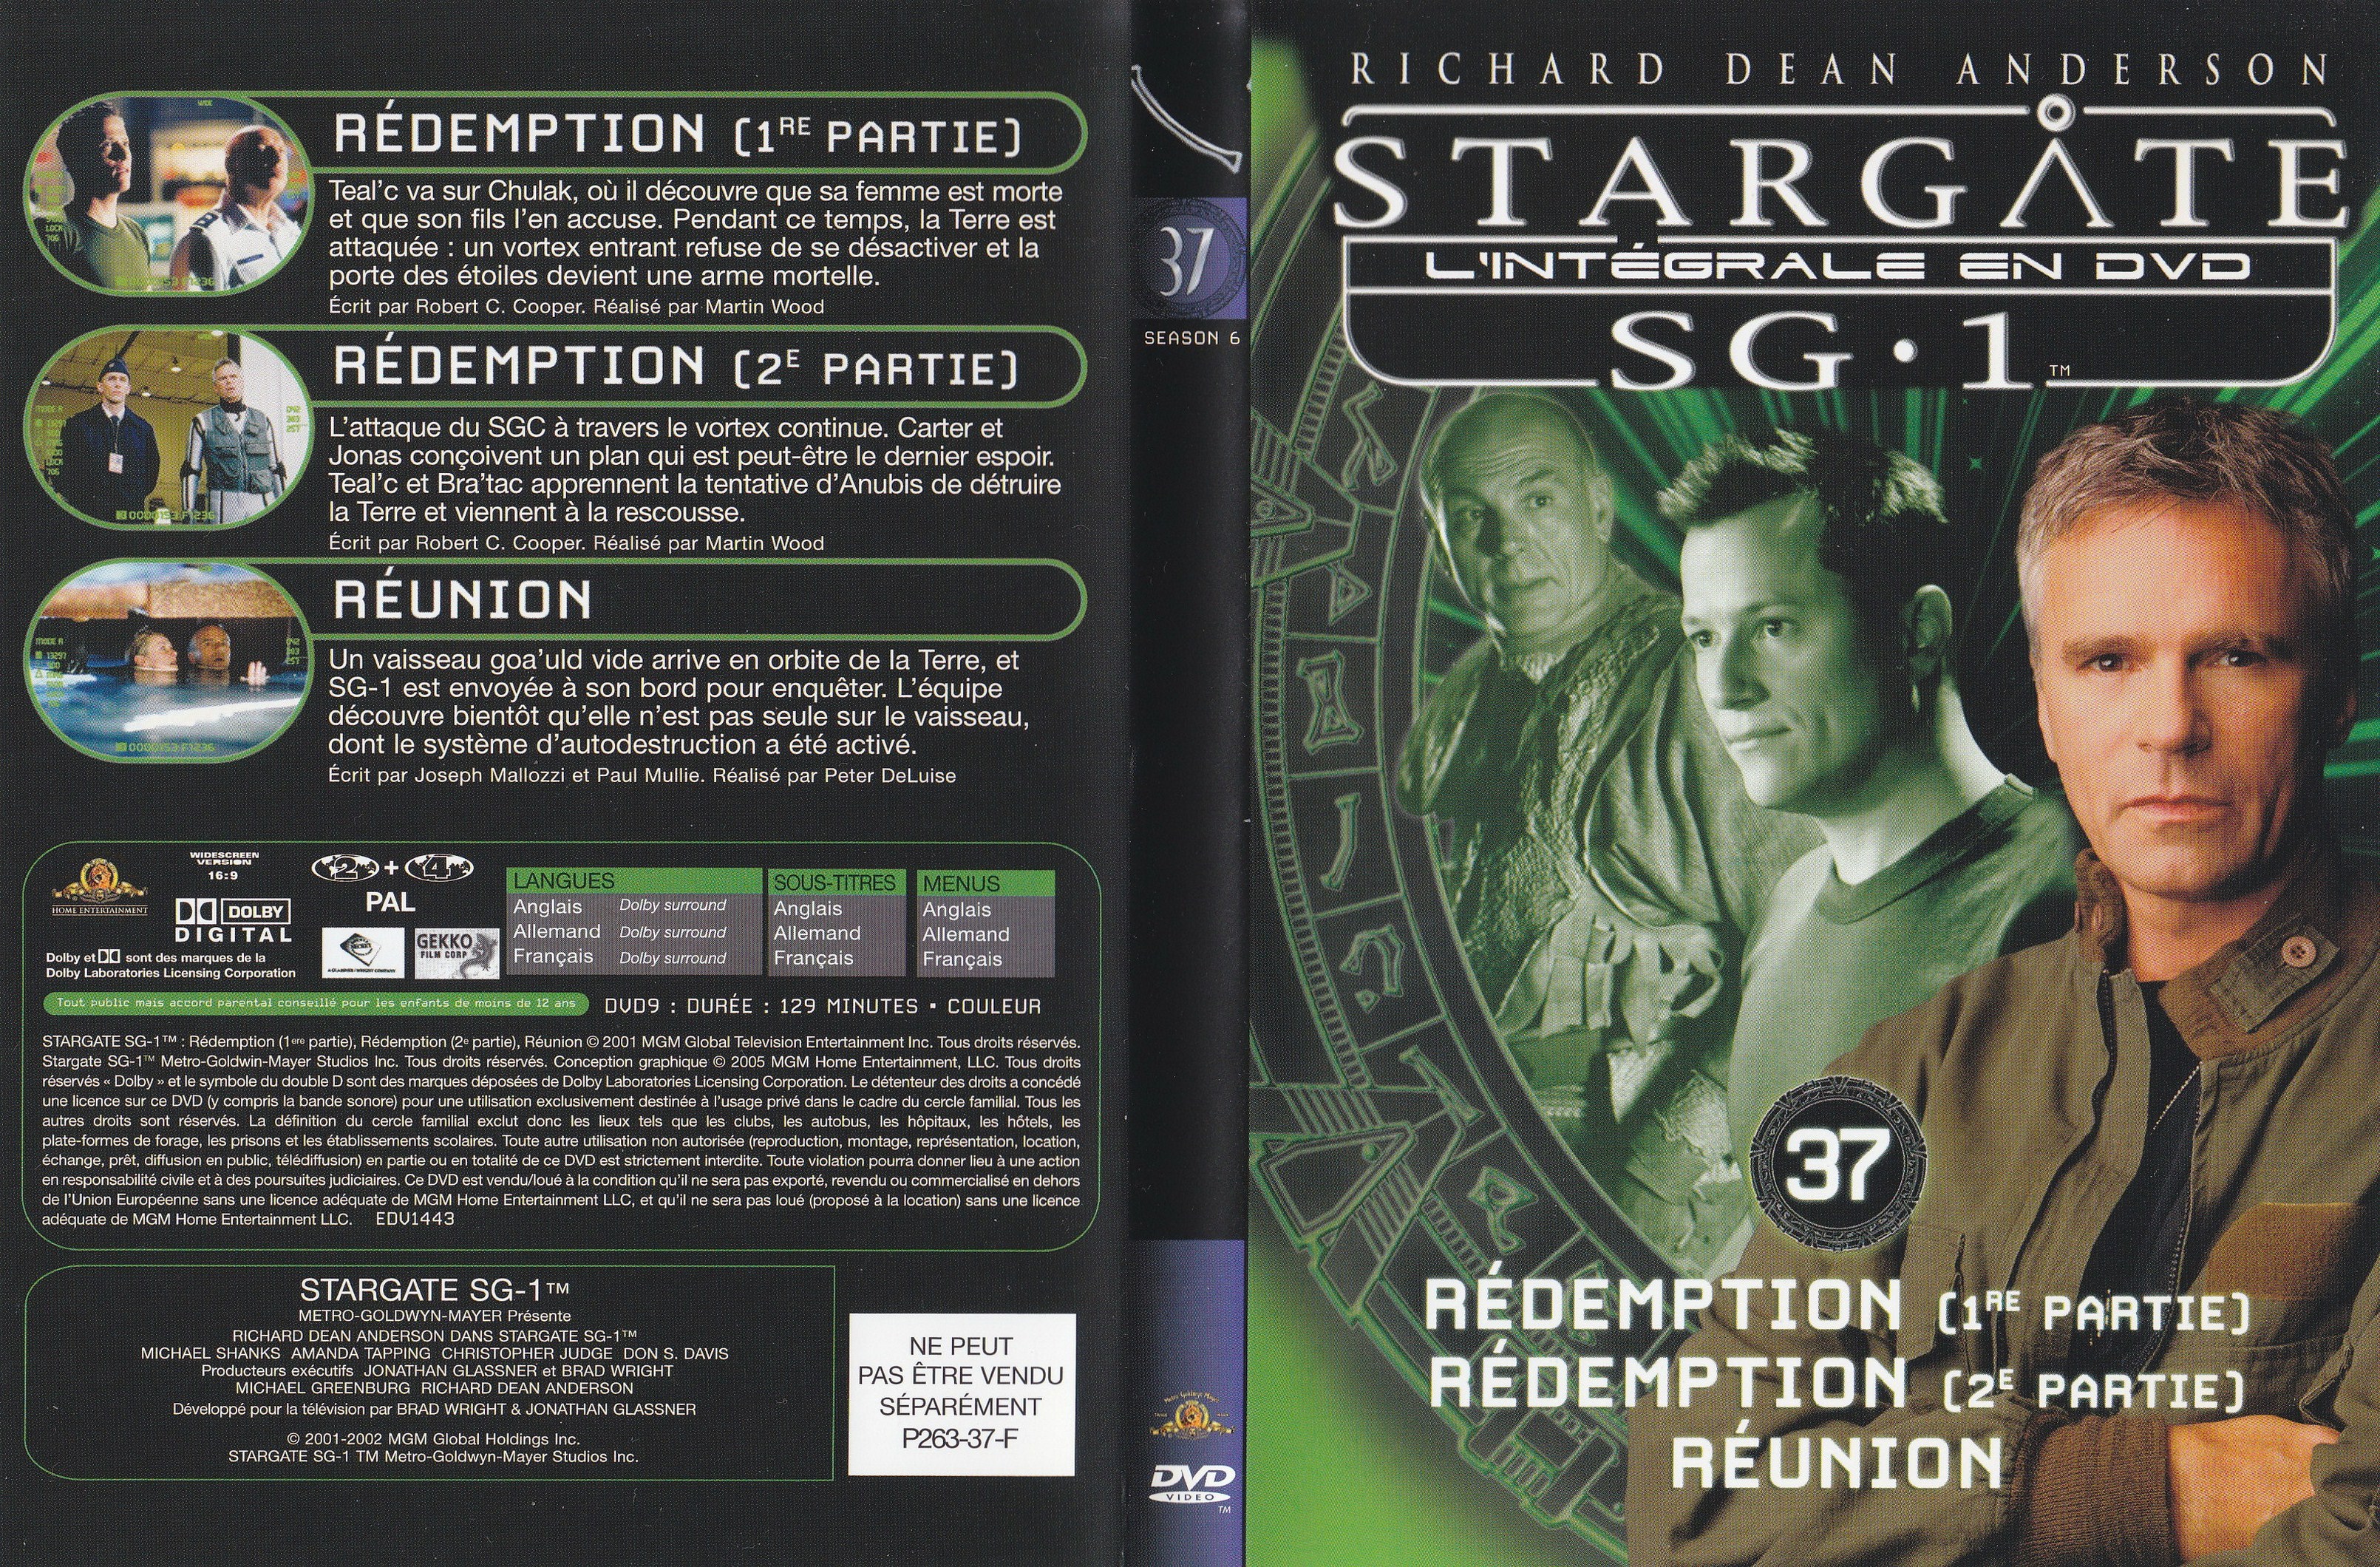 Stargate SG1 Intgrale Saison 6 vol 37